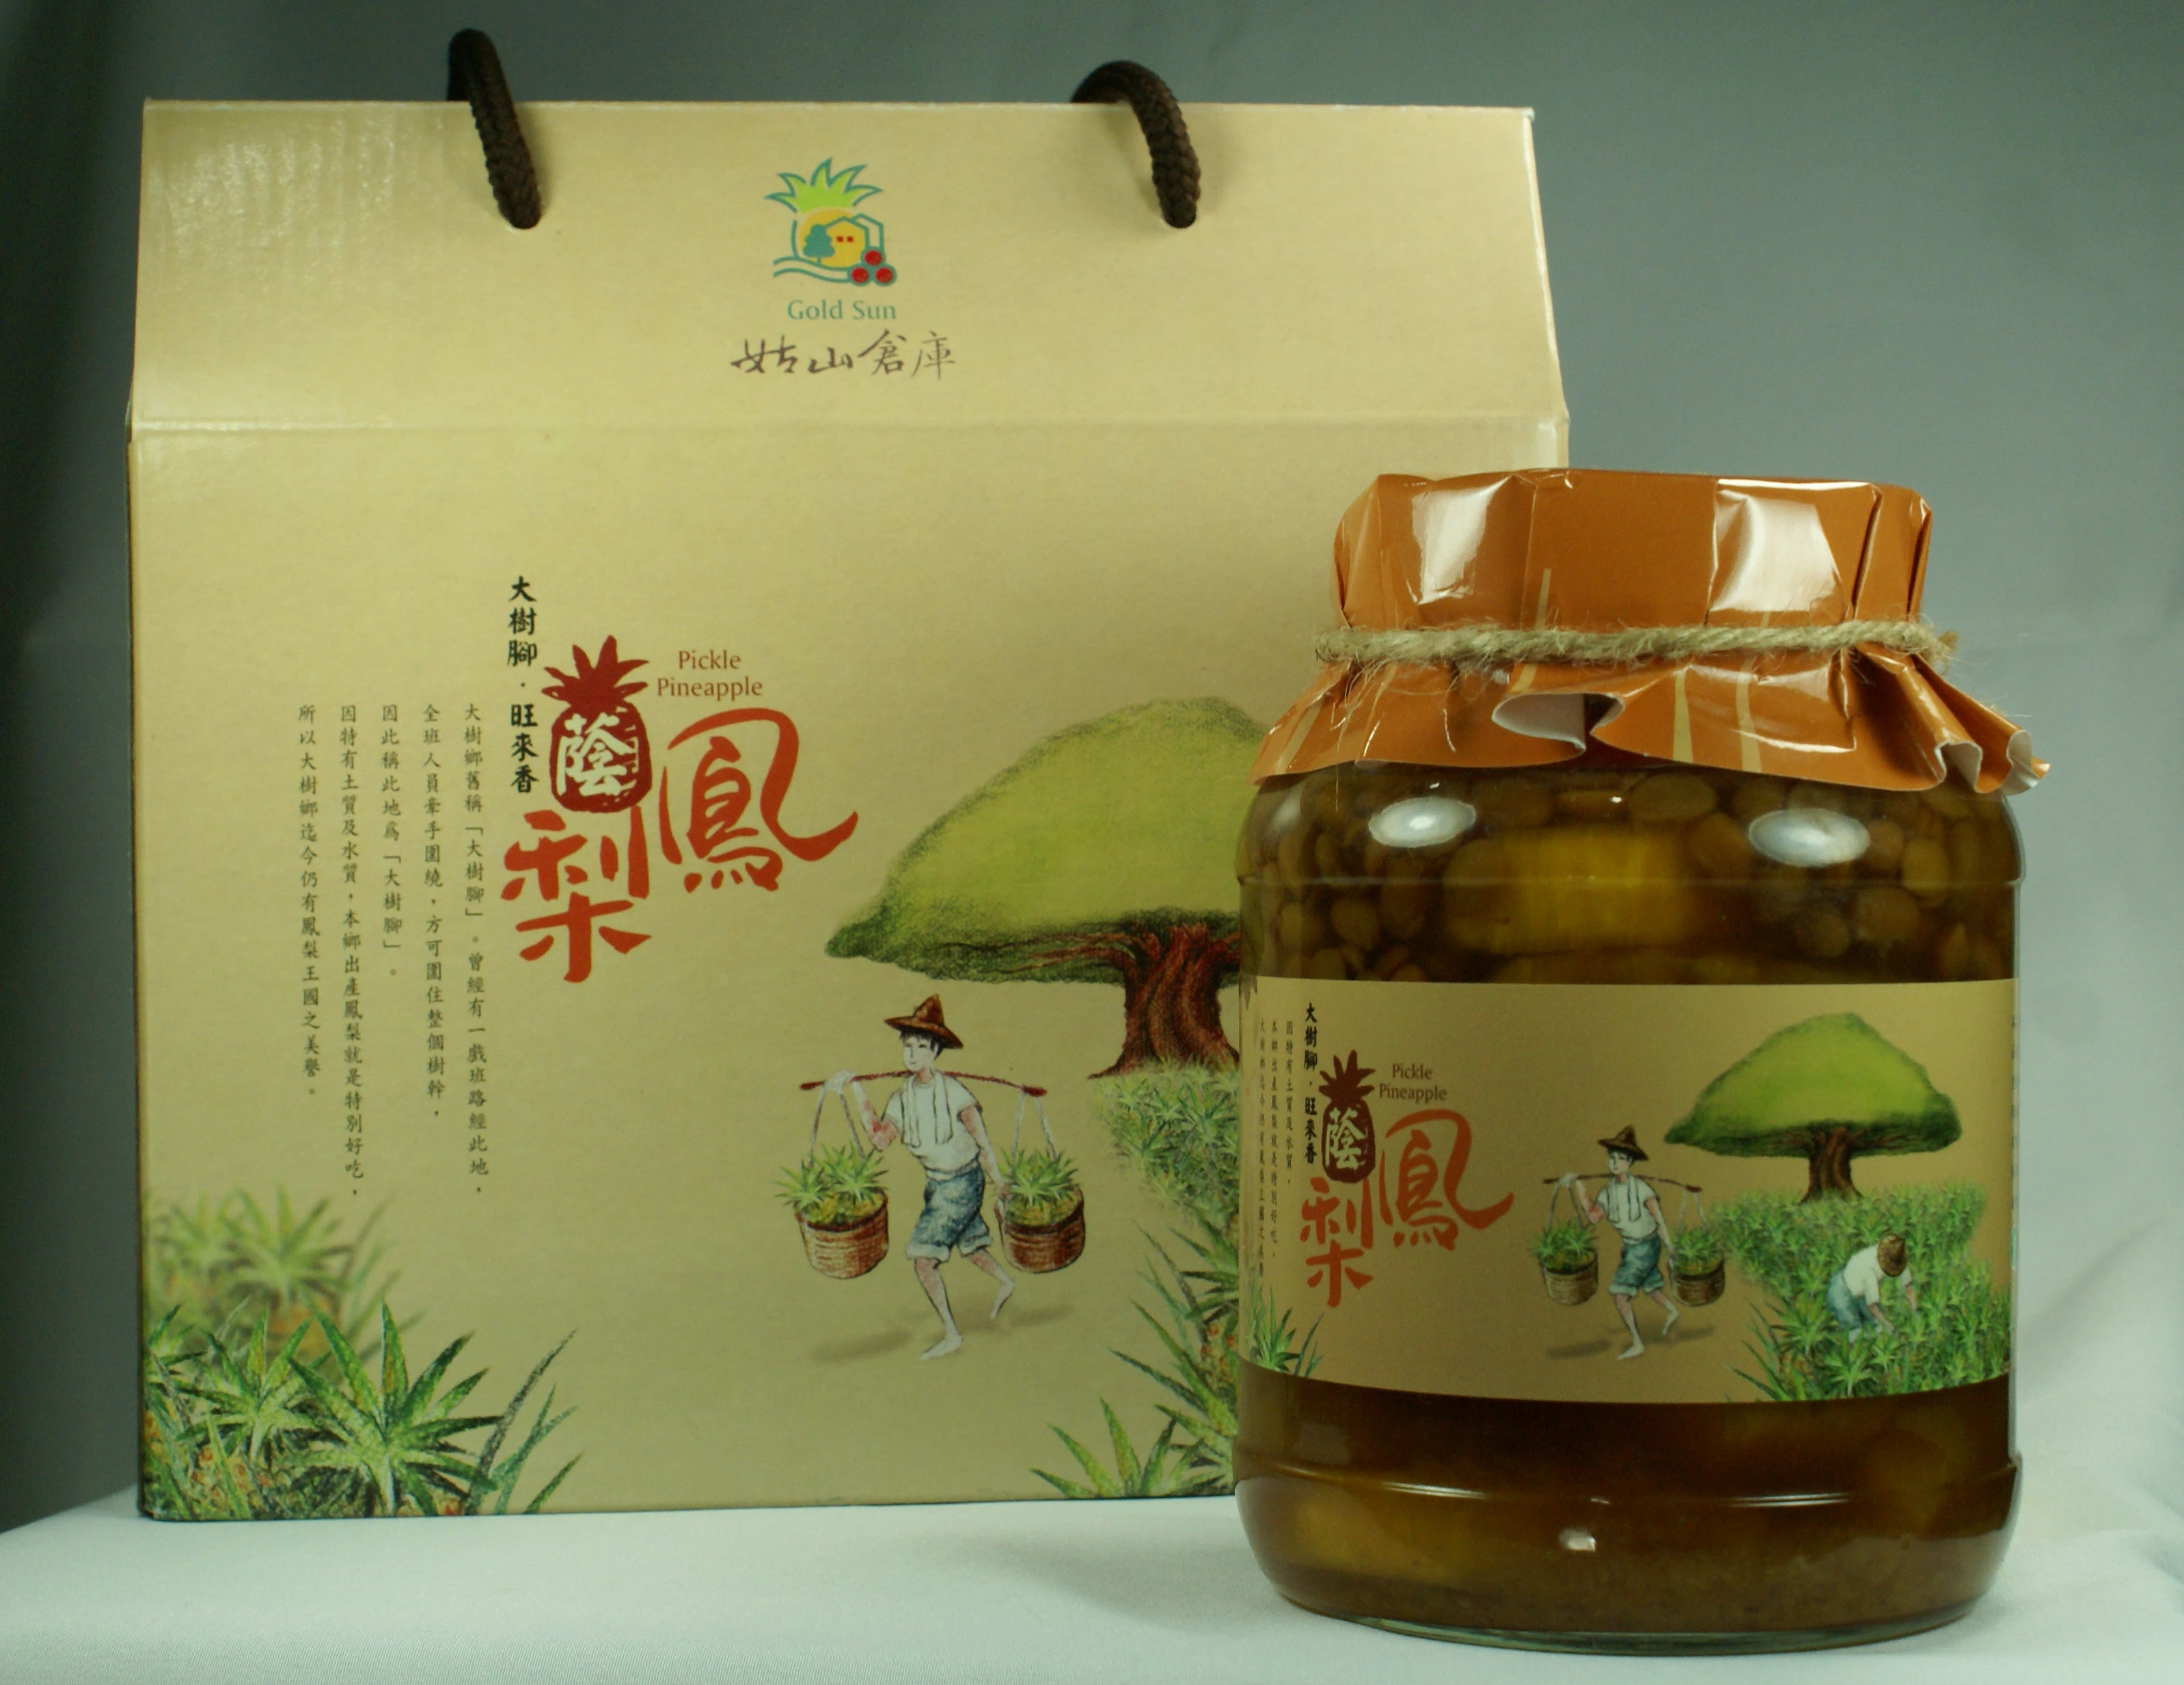 本產品榮獲2008年台灣百大觀光特產。